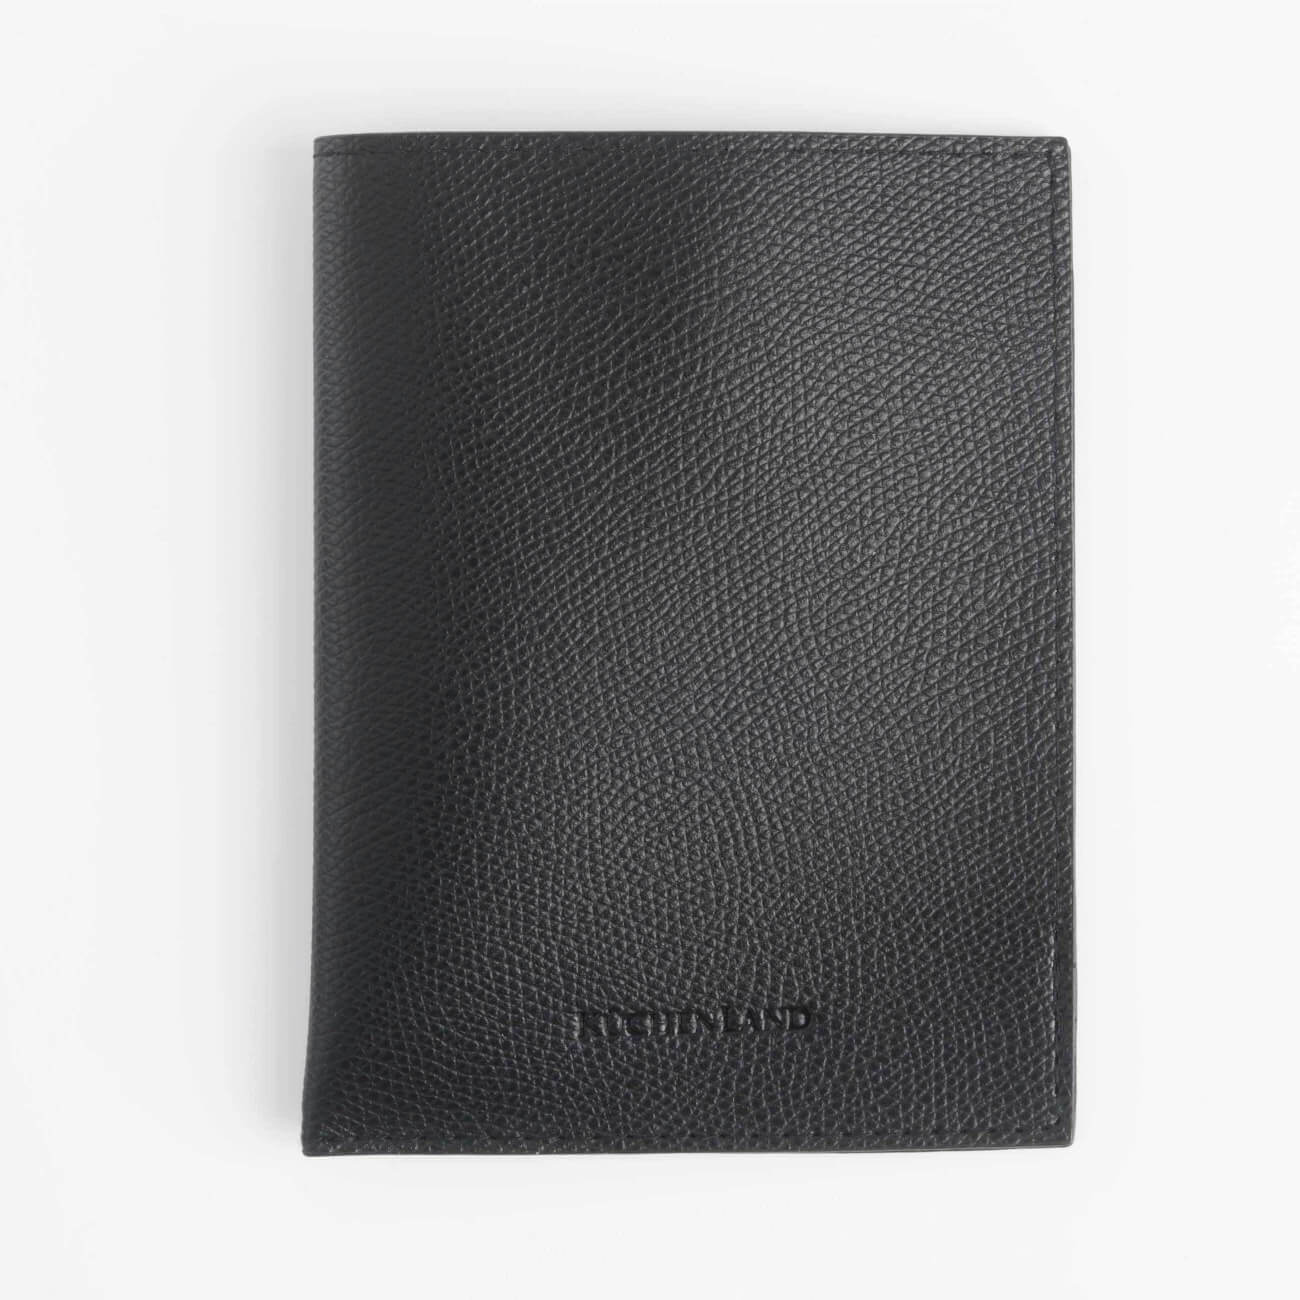 Чехол для паспорта, 10х13 см, полиуретан, черный, Memo